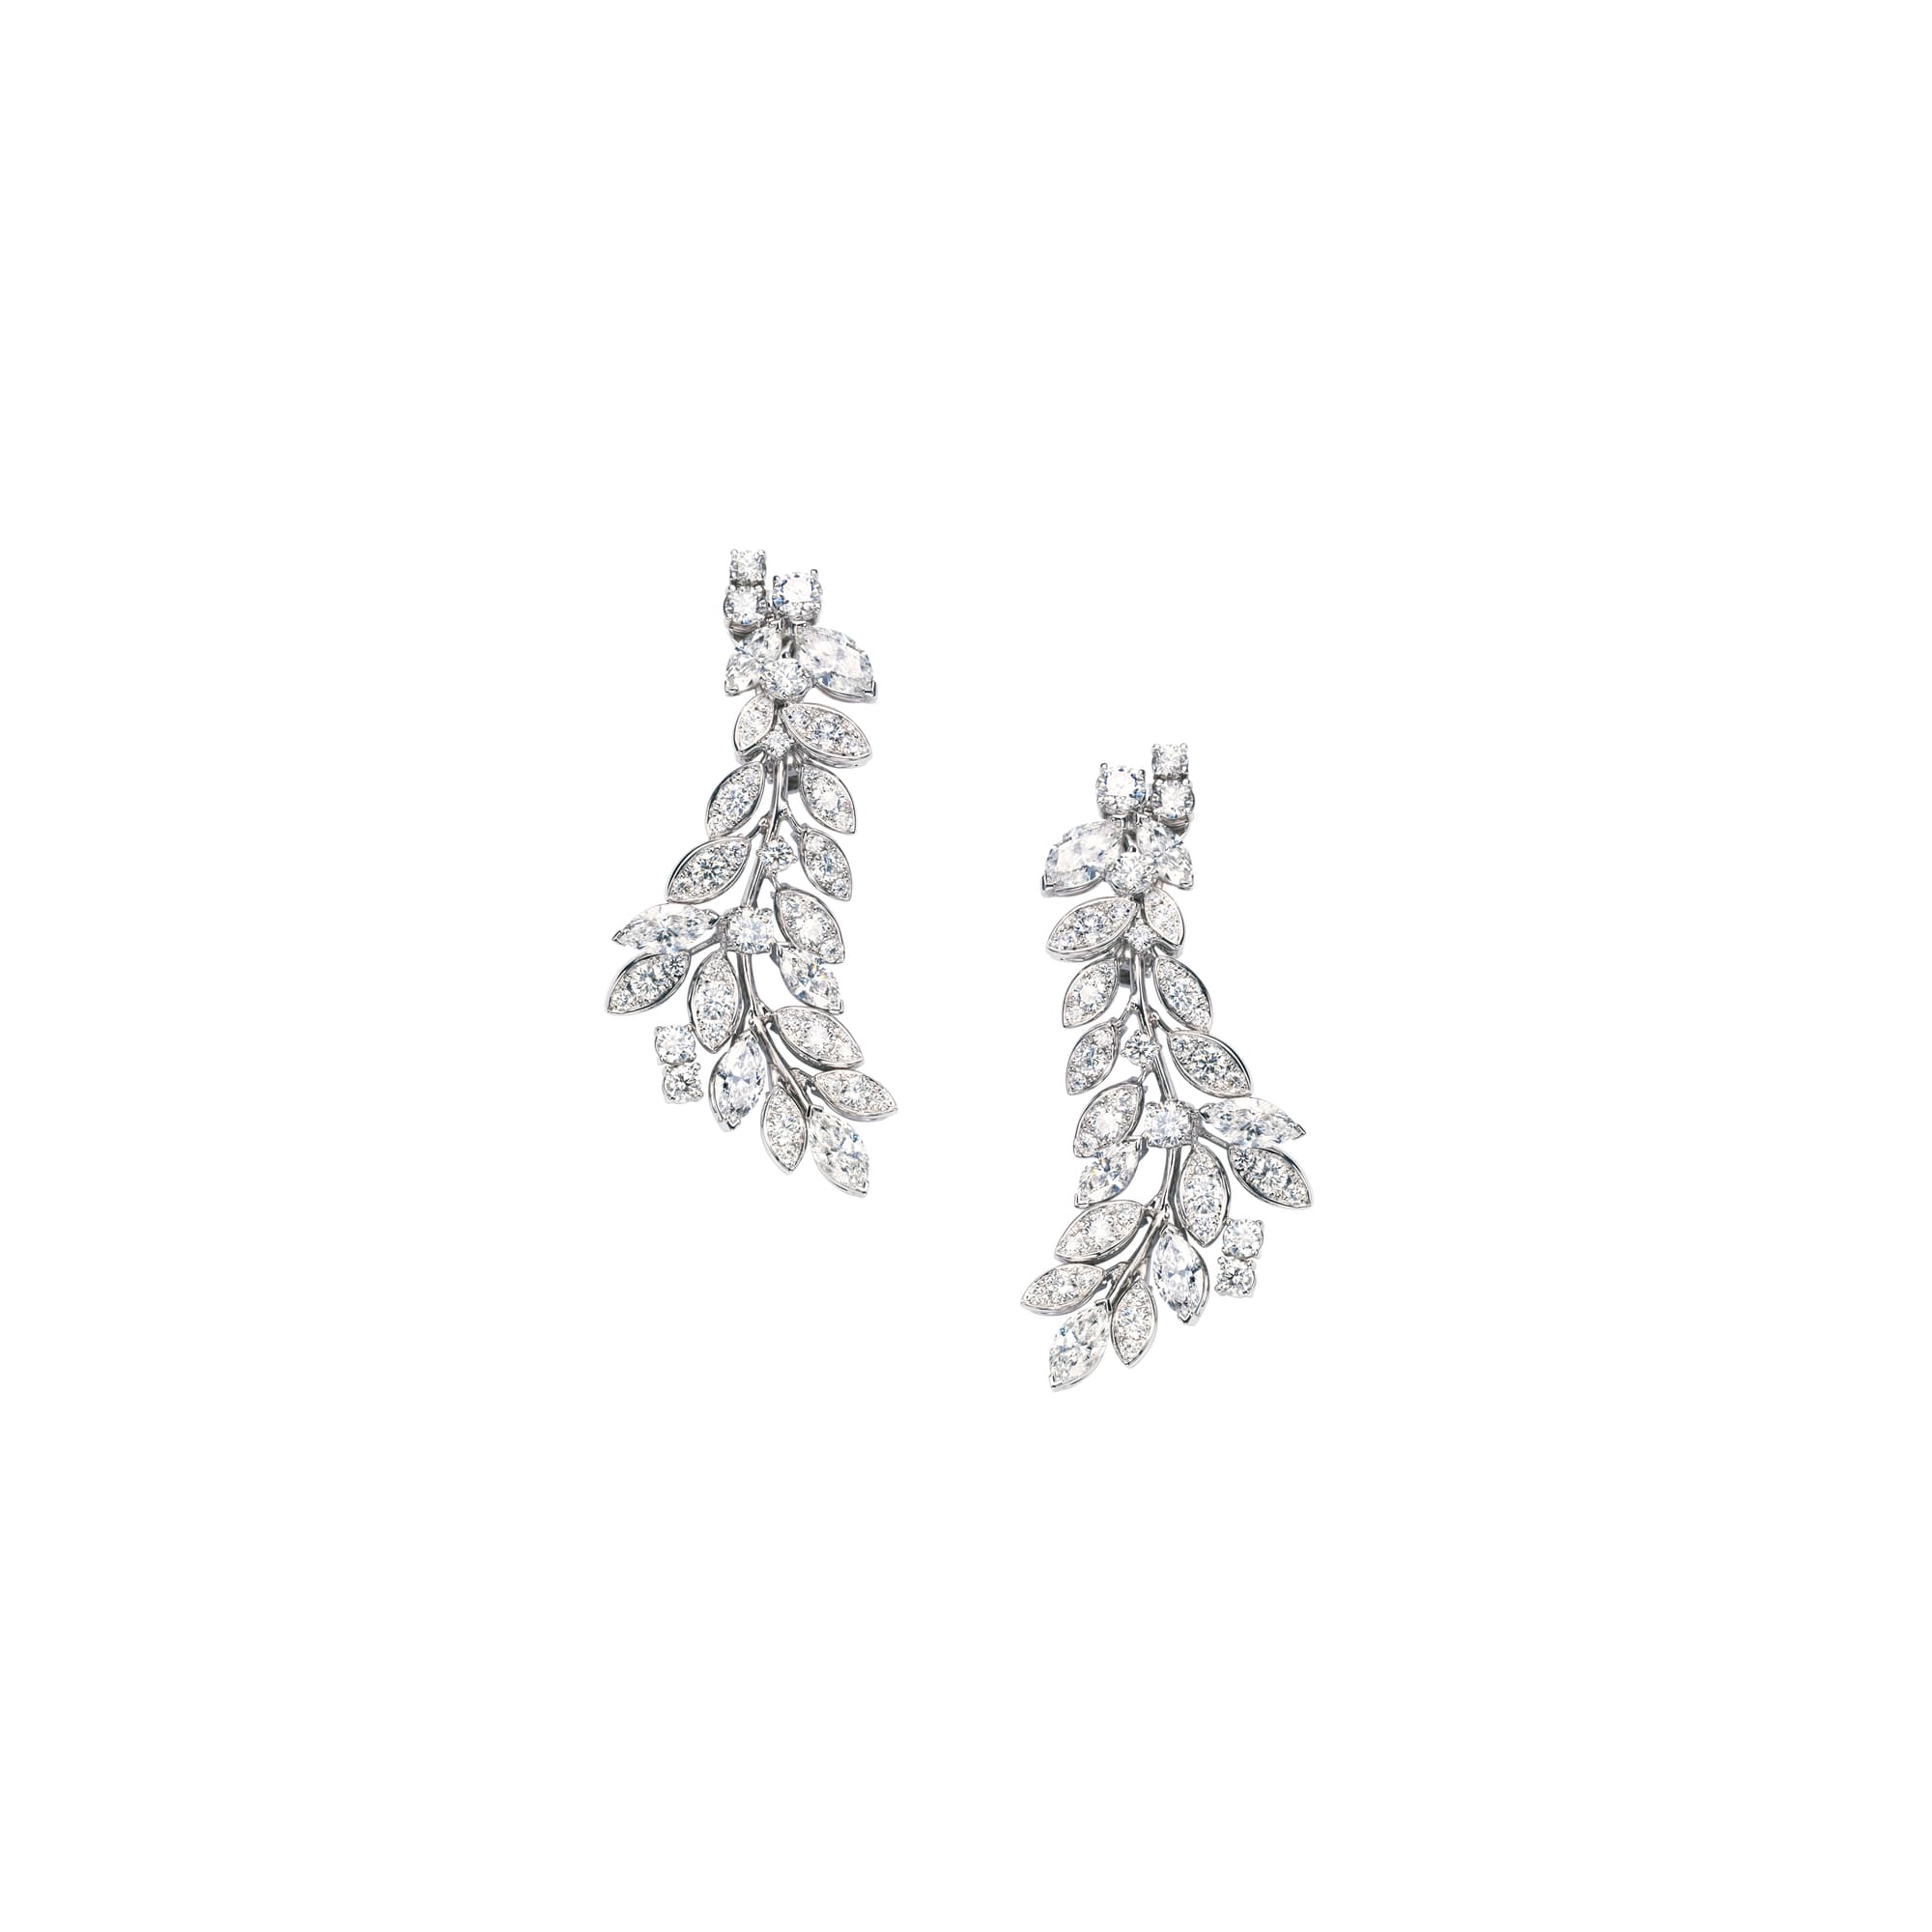 White gold Diamond Earrings G38LF200 - Piaget Luxury Jewelry Online